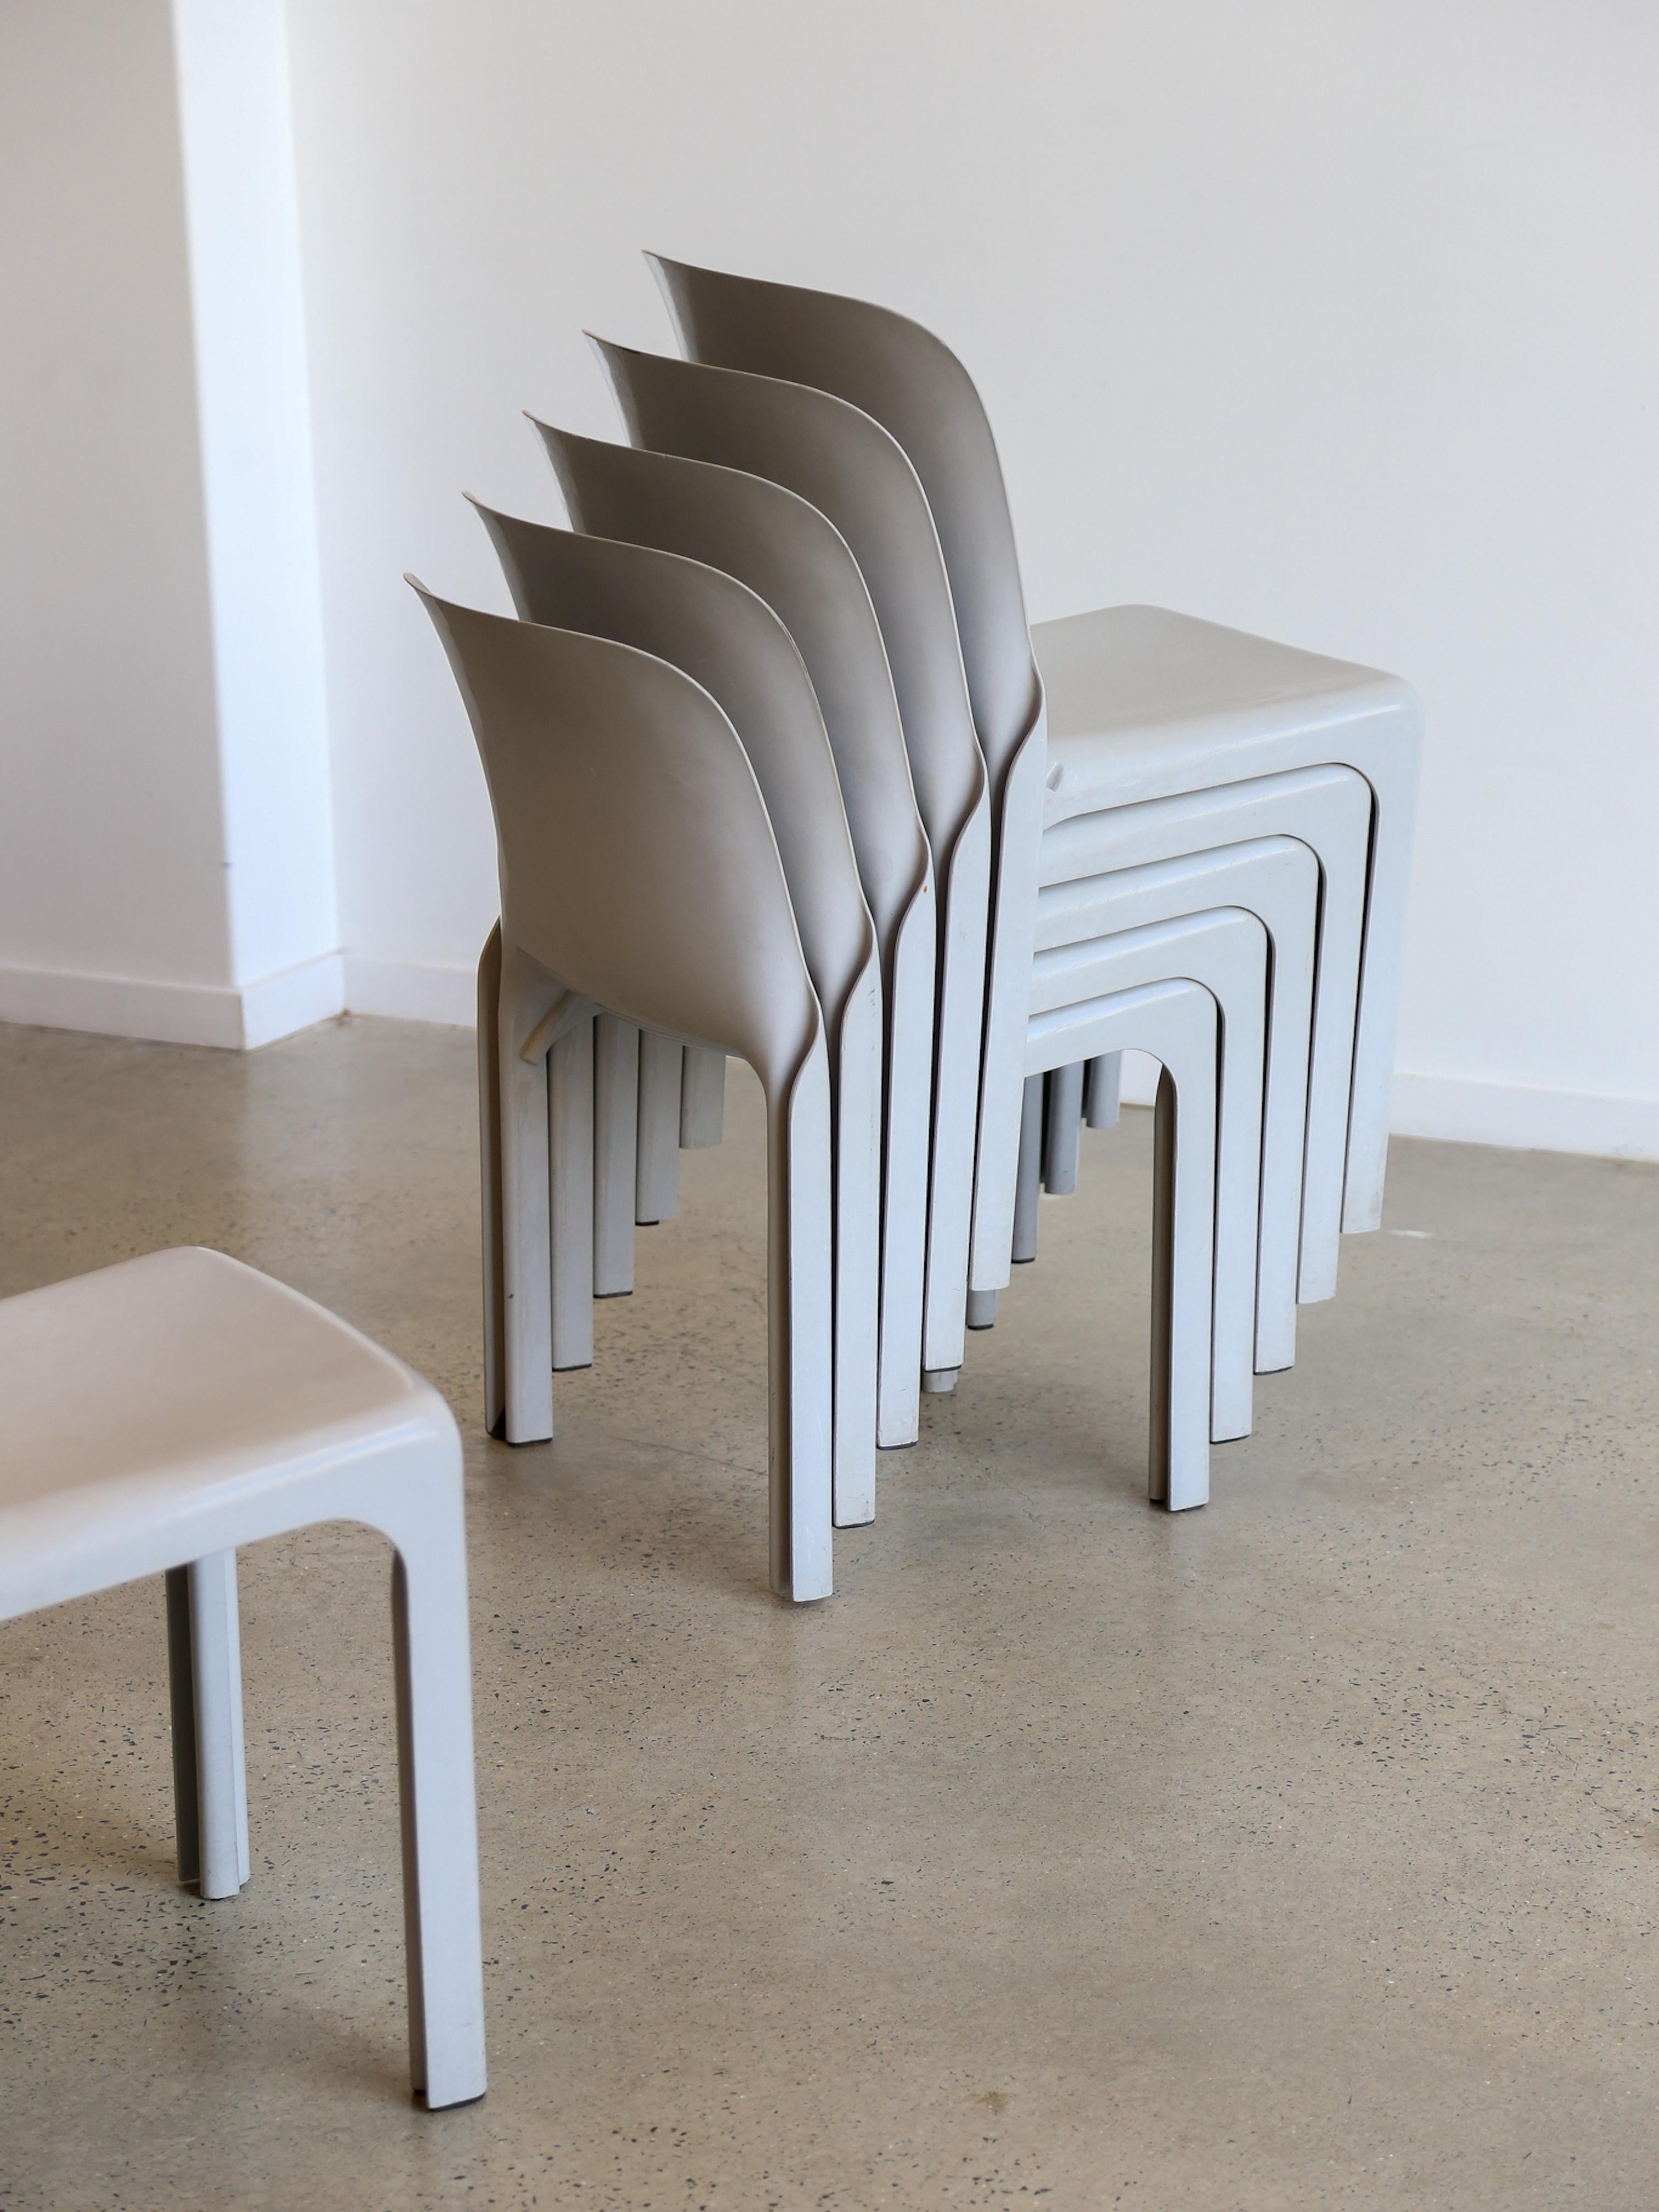 Ensemble de six chaises Selene grises de Vico Magistretti pour Artemide 1969.

La chaise Selene, également connue sous le nom de 